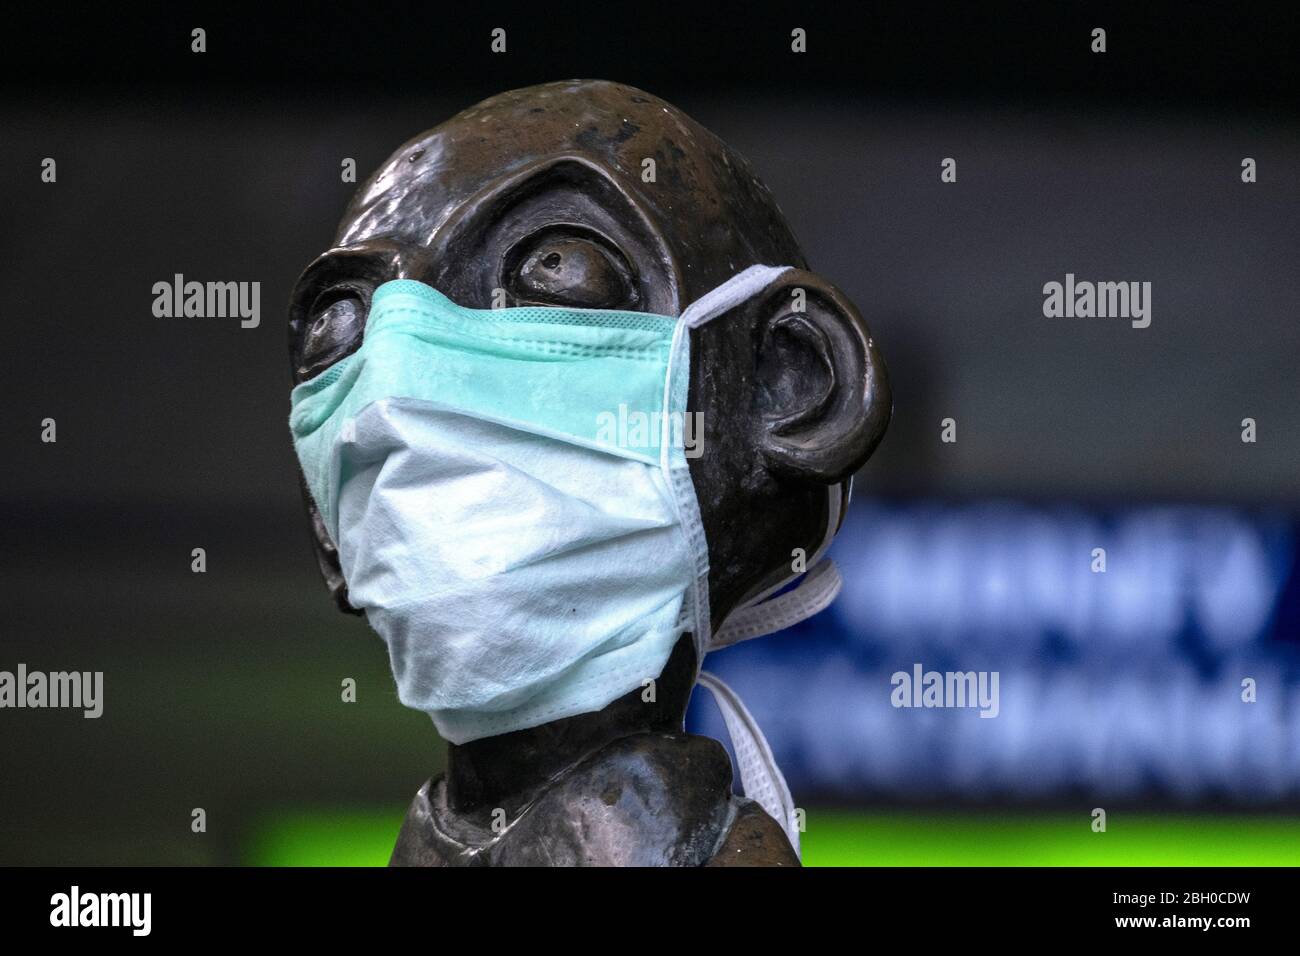 Covid-19, Coronavirus, Pandemic, Melbourne Australia 2020. Una statua nella città di Melbourne con maschera facciale. Foto Stock